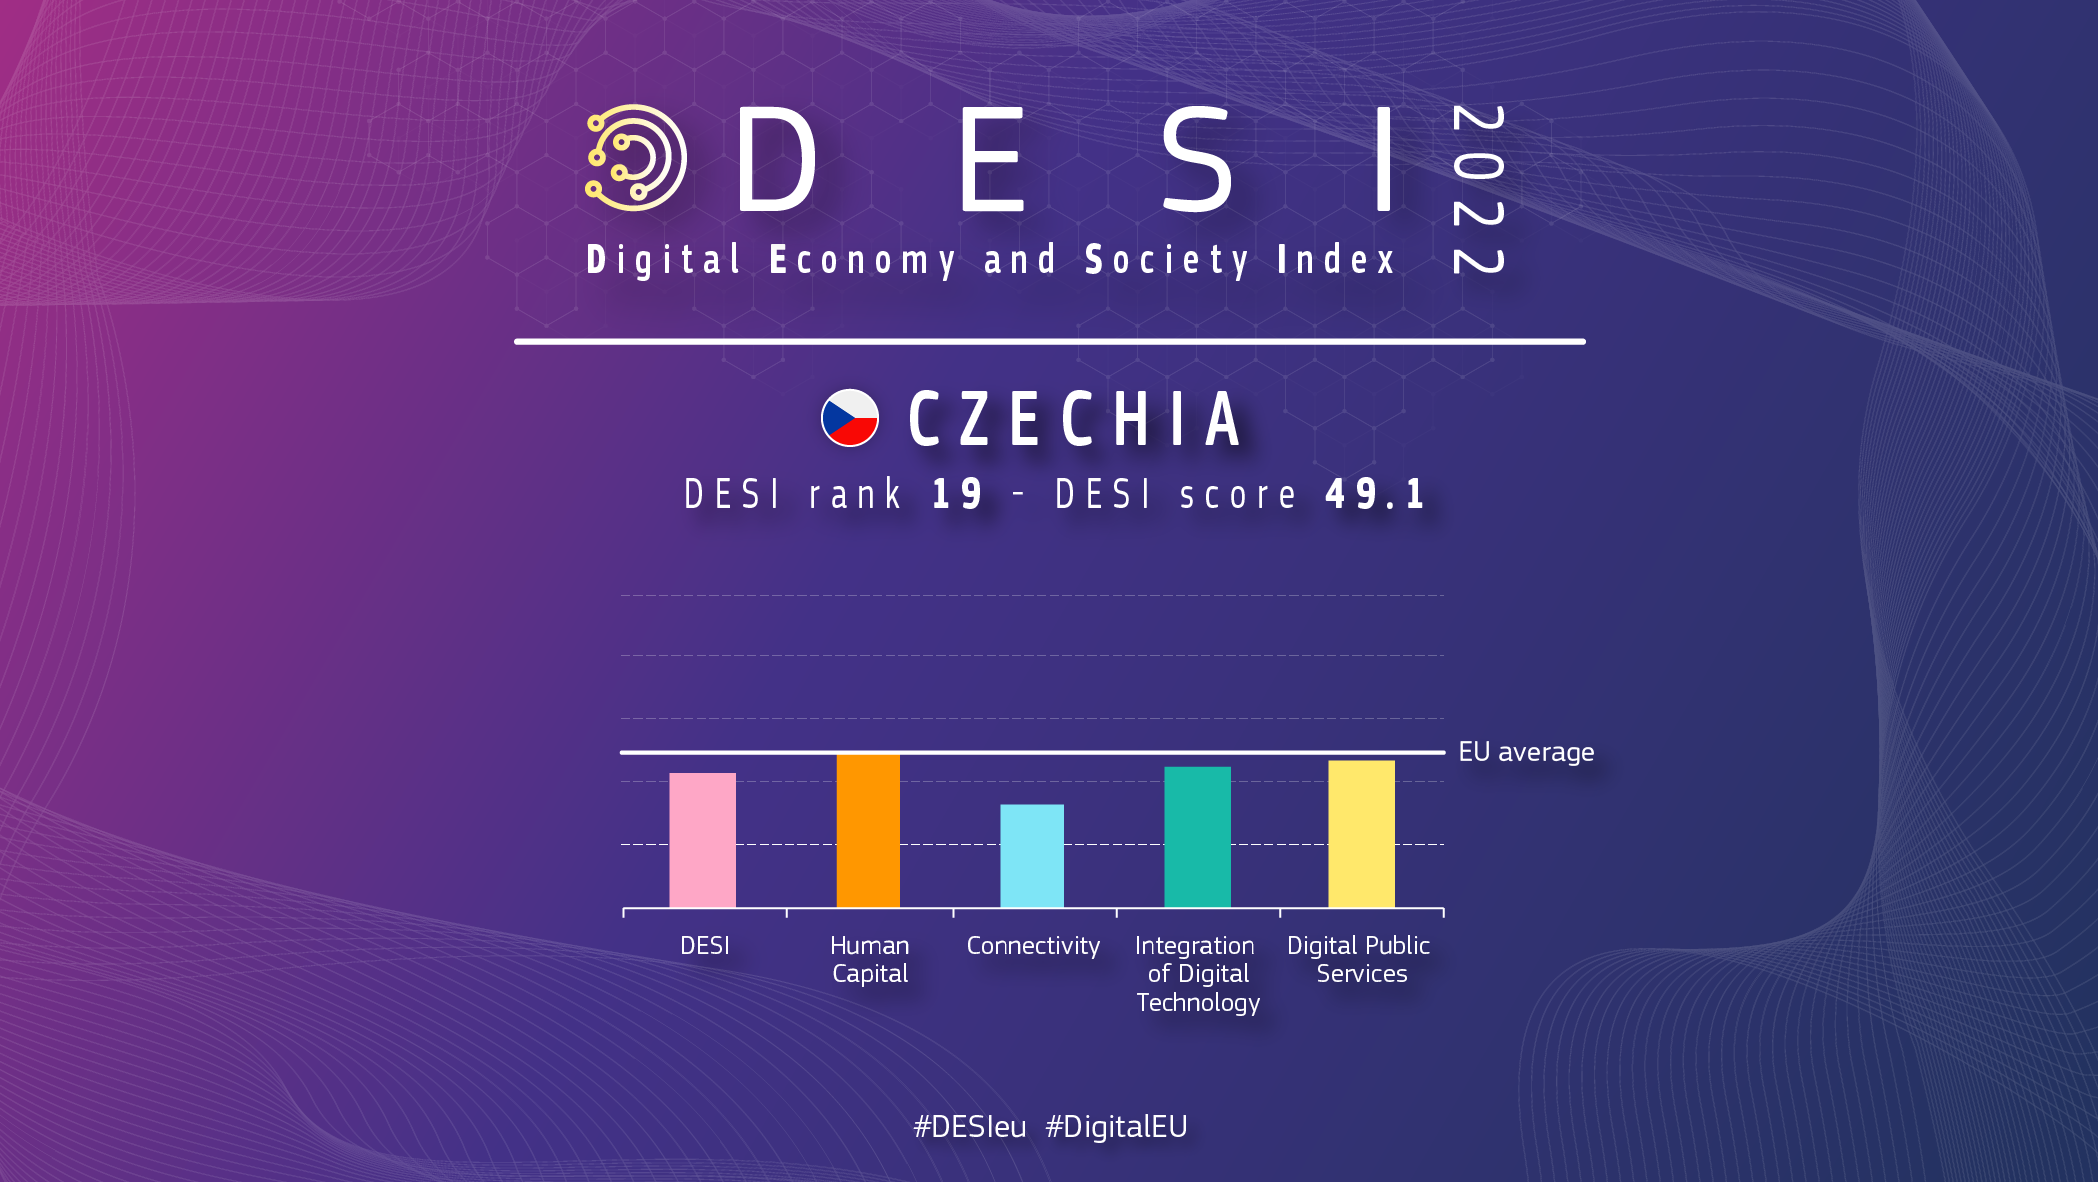 Grafisks pārskats par Čehiju DESI, kurā vērtējums ir 19 un vērtējums 49,1